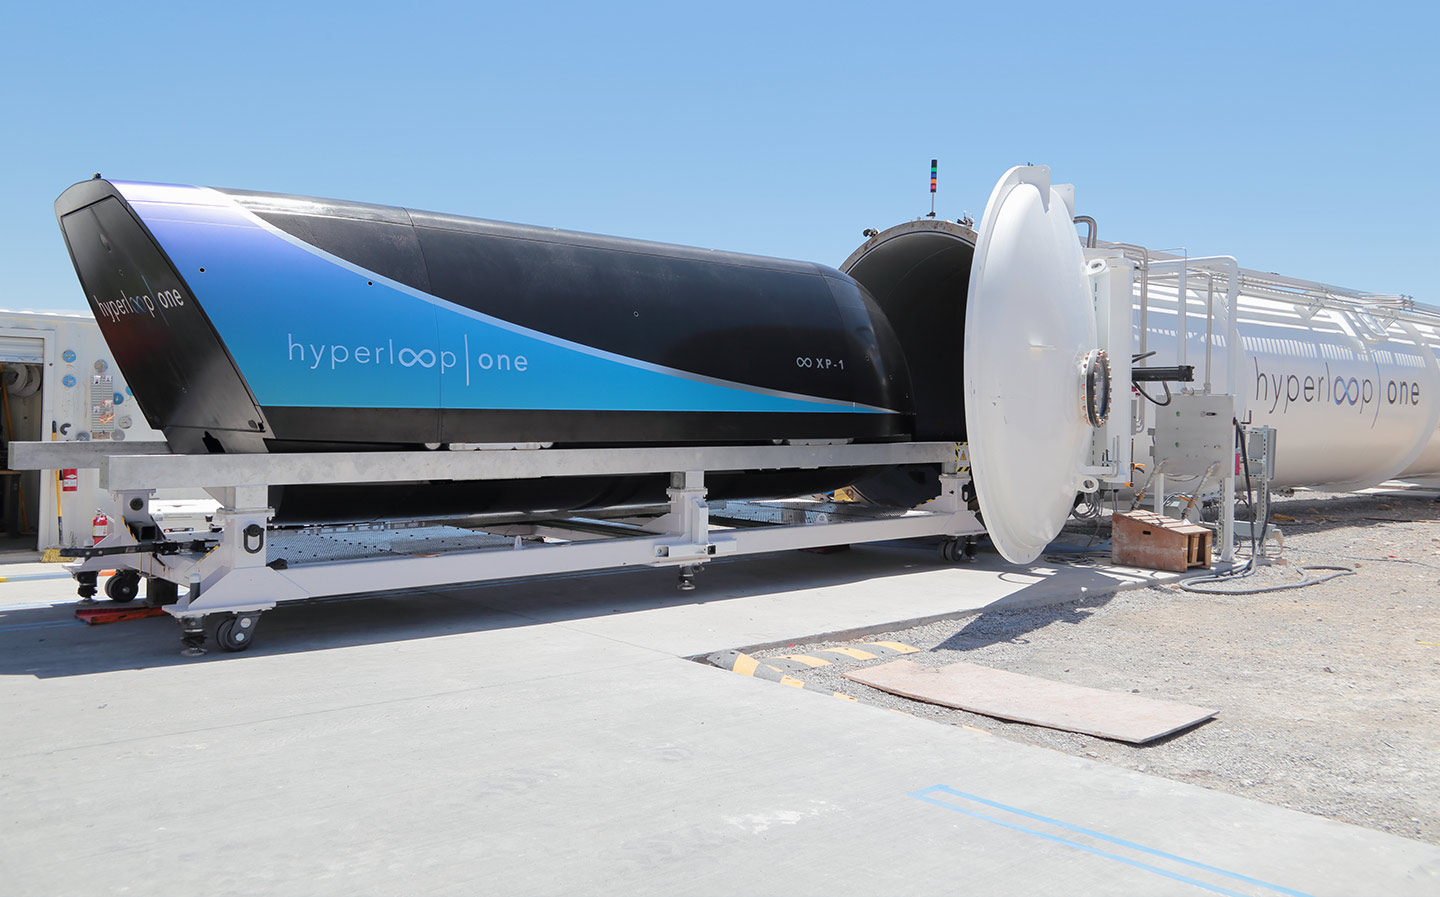 In pods we trust: enter the 700mph Hyperloop